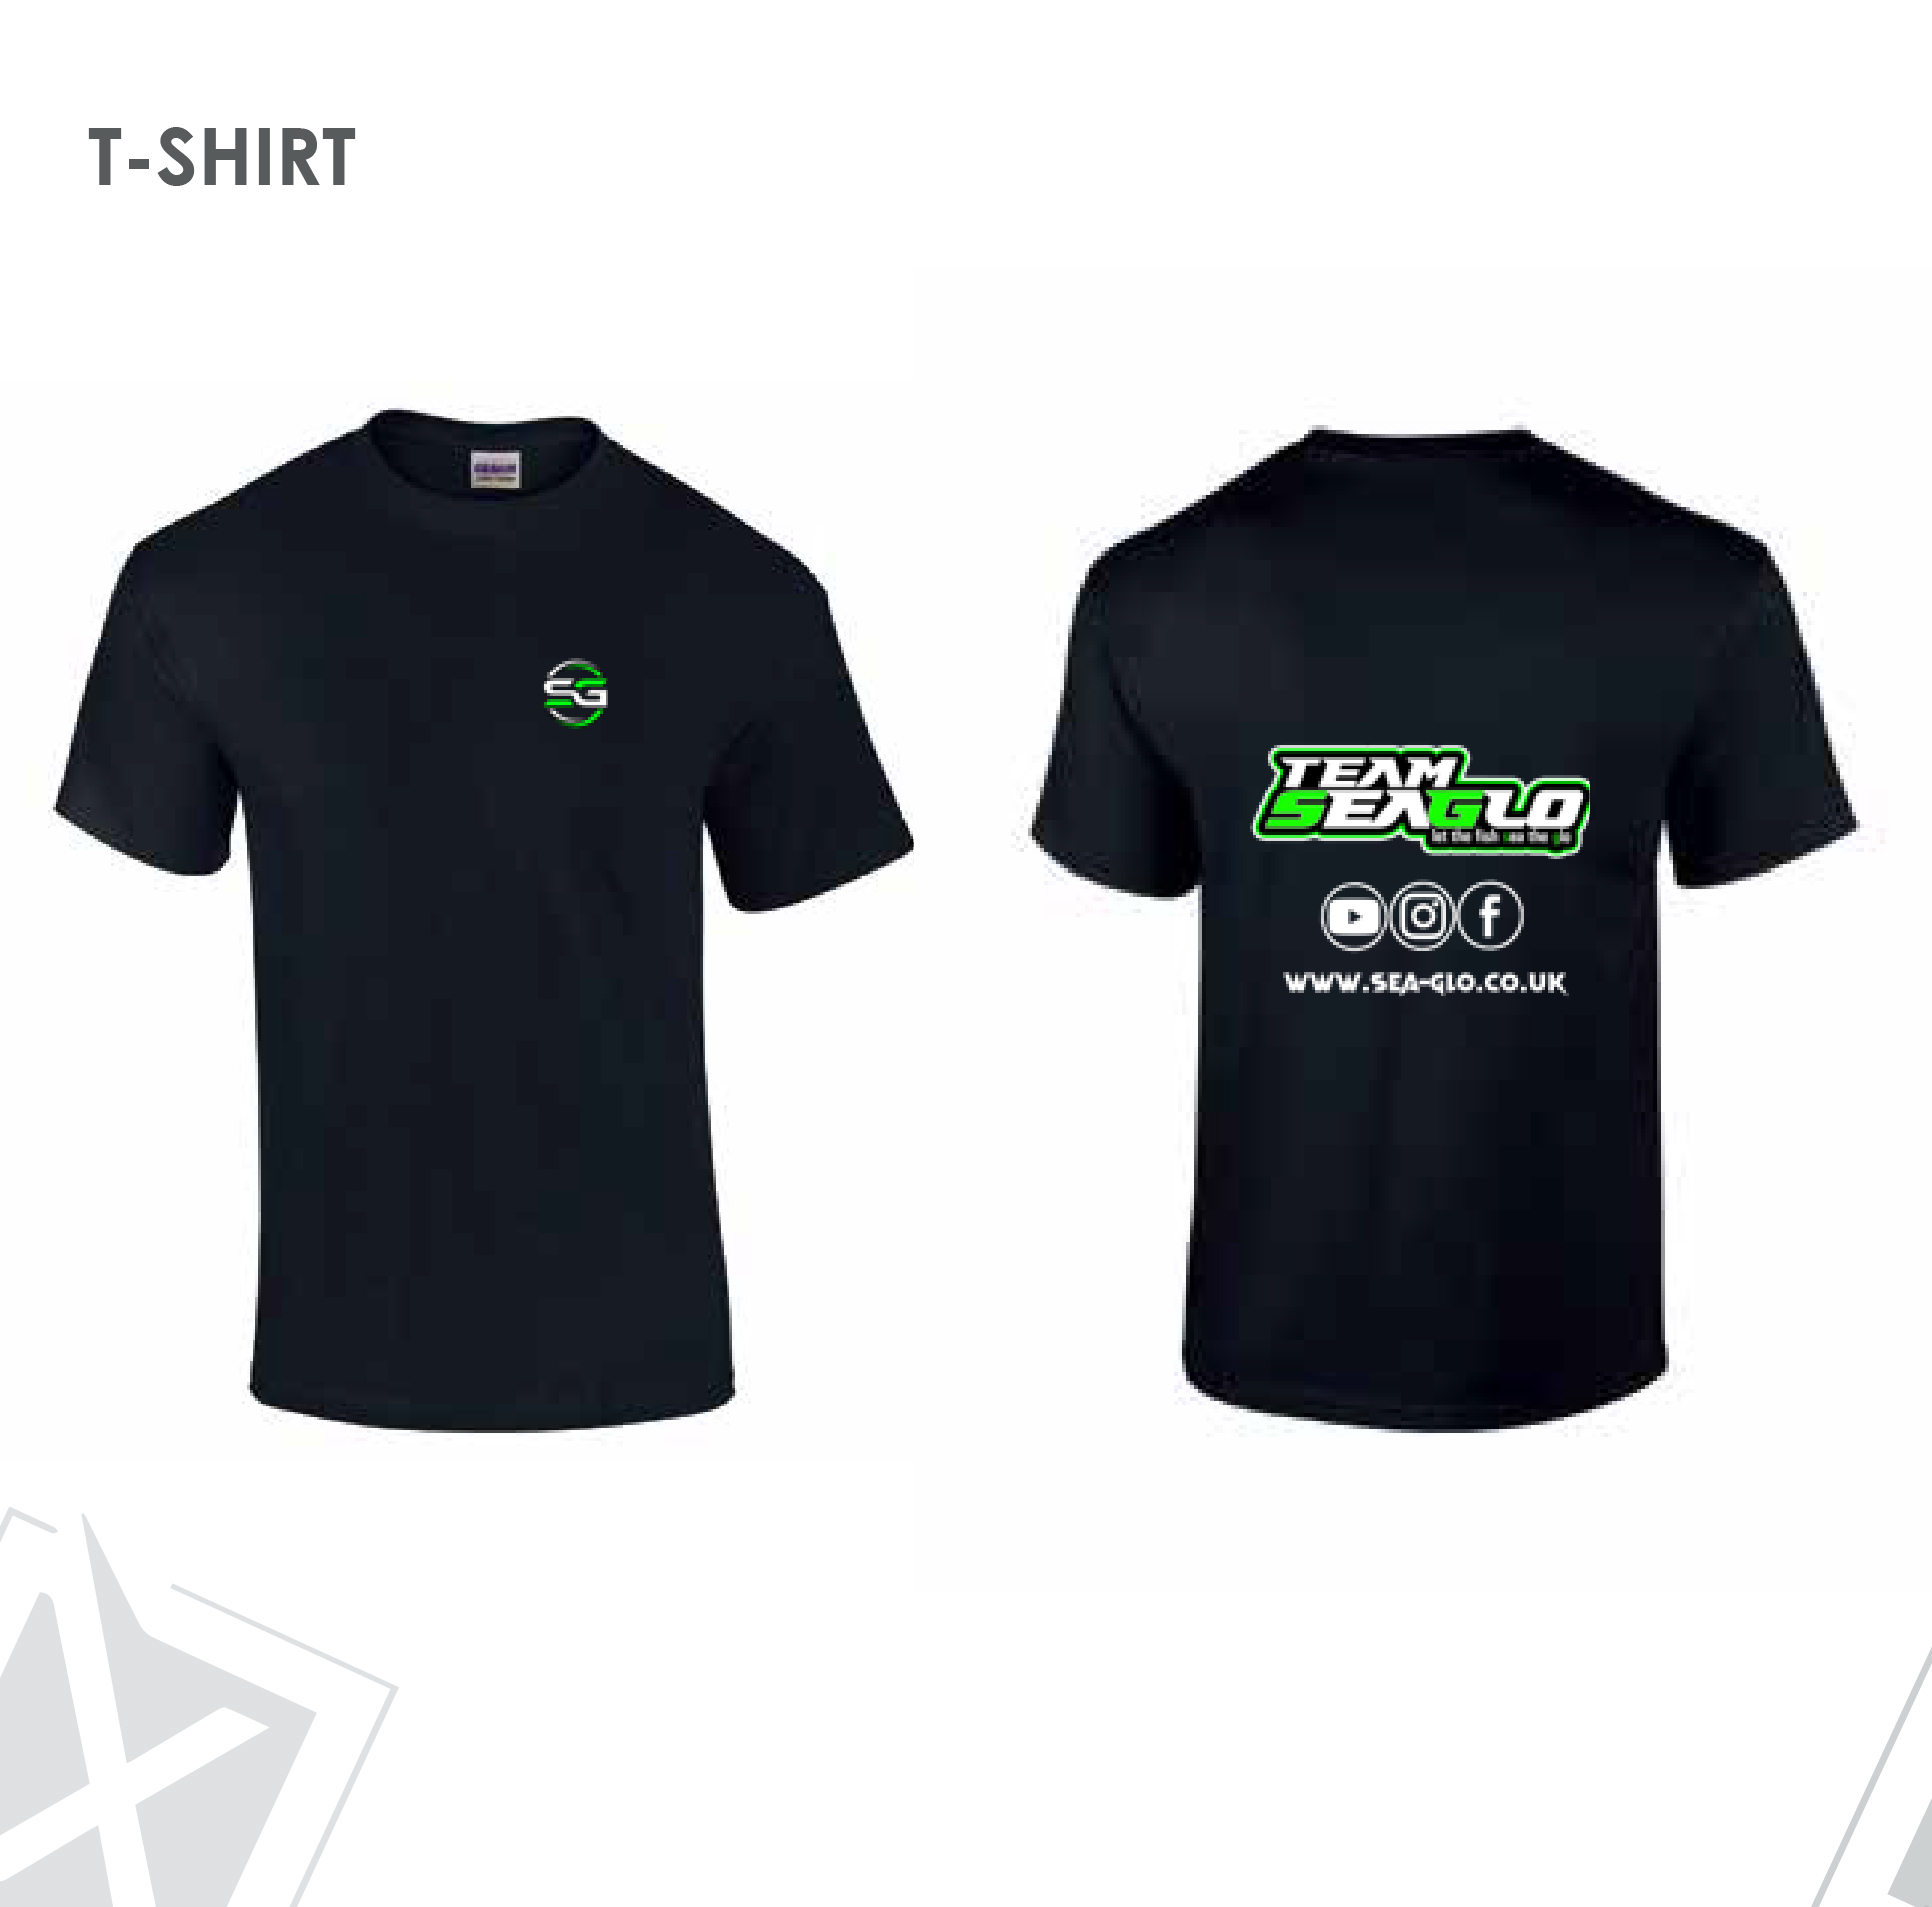 Seaglo T-Shirt 